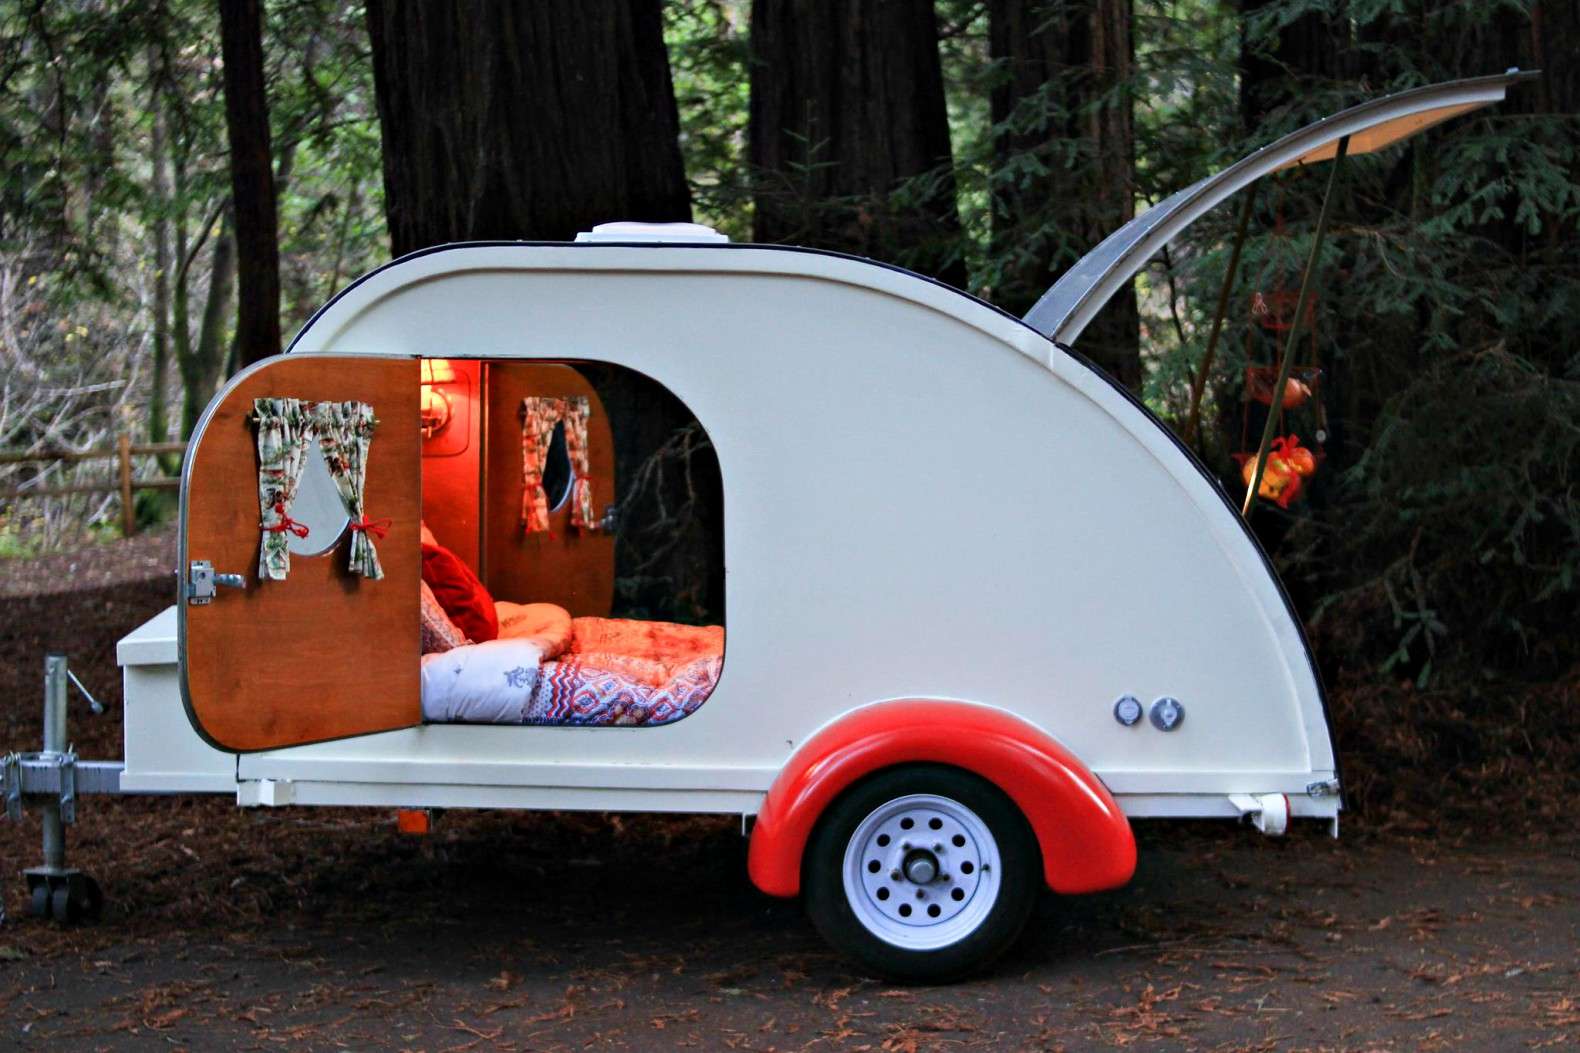 Camp Weathered lets you rent a vintage teardrop camper for ...